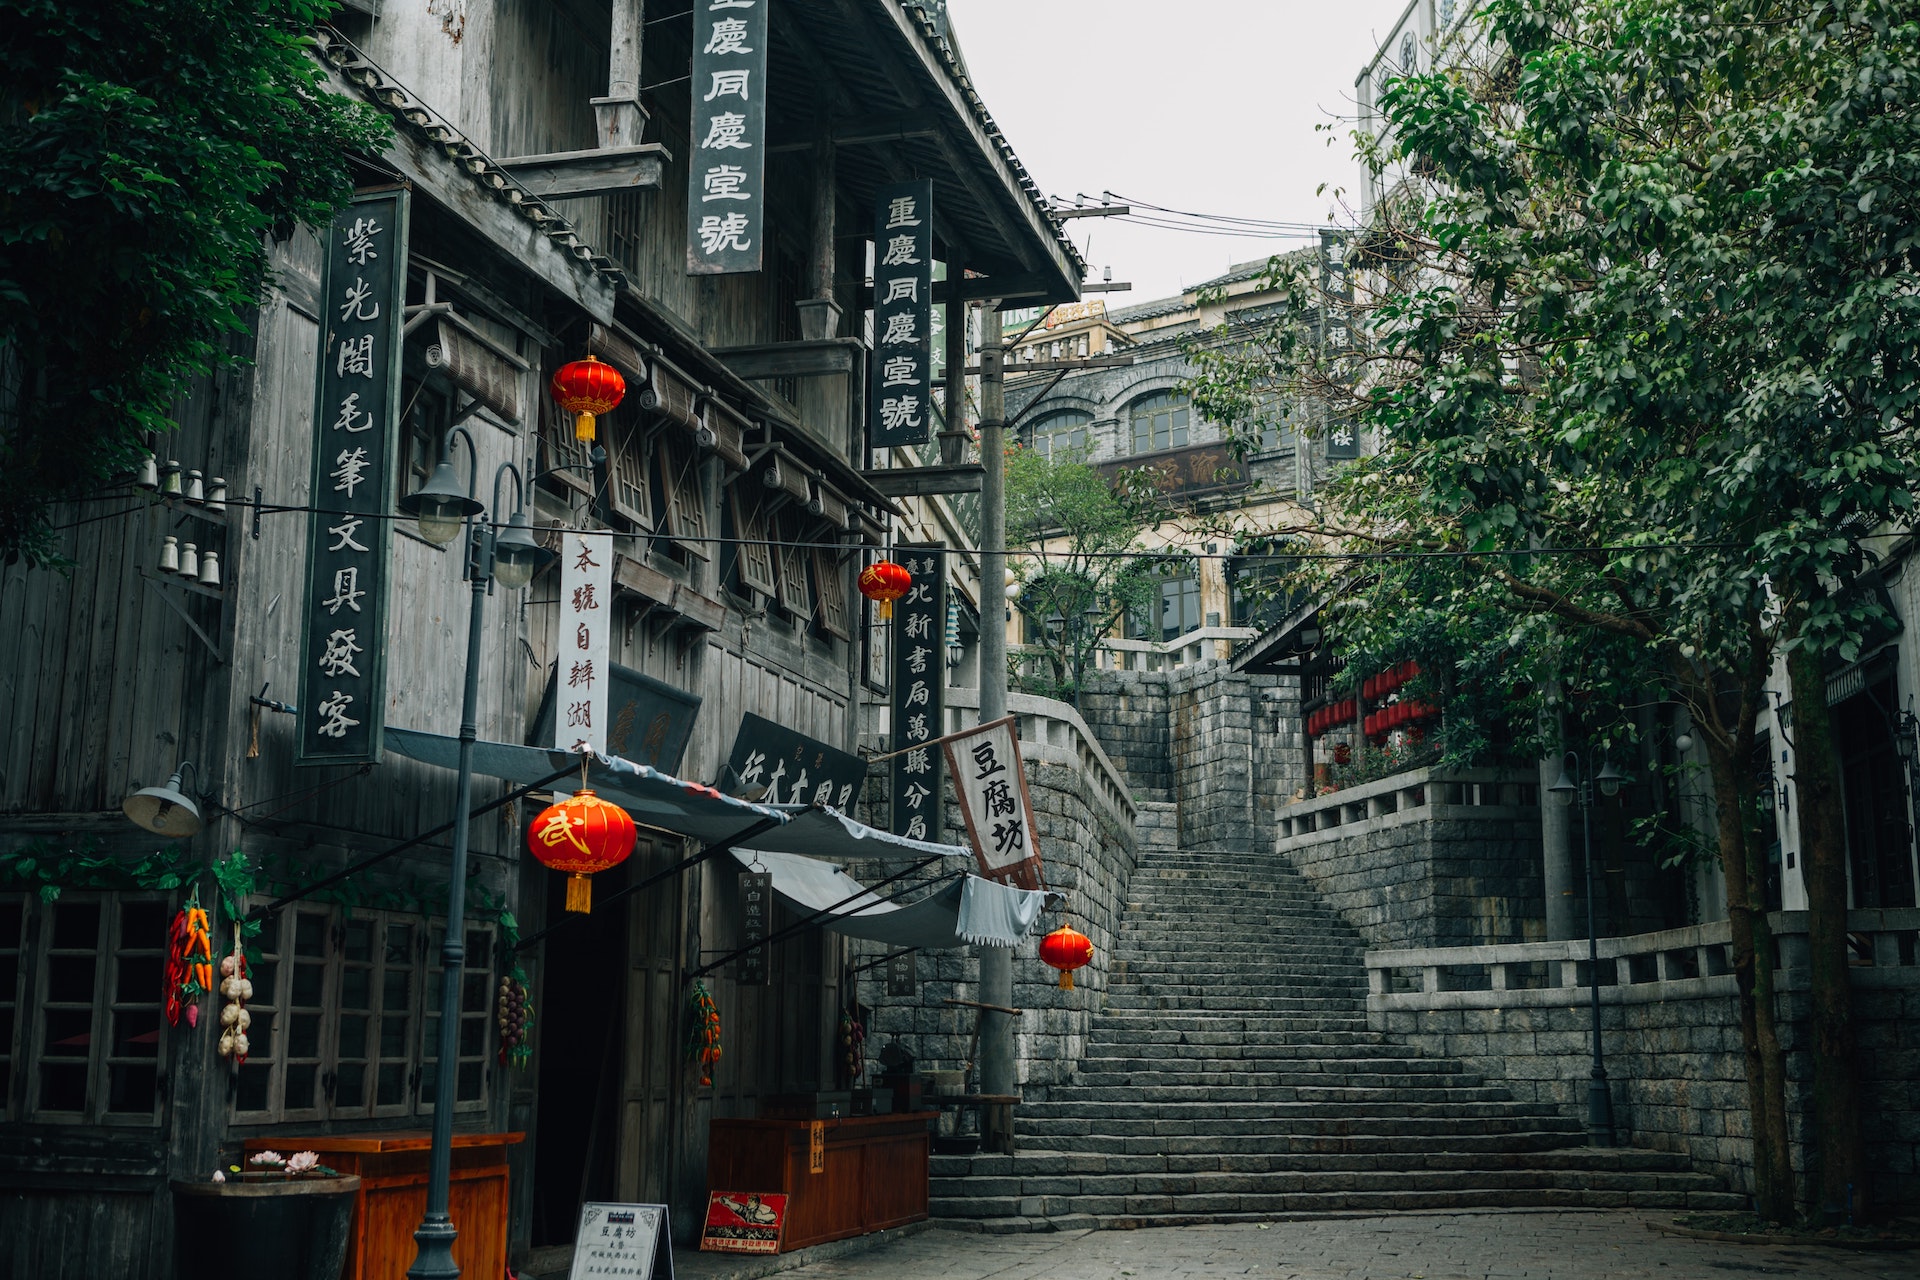 등불이 달린 건물과 계단이 보이는 중국의 거리